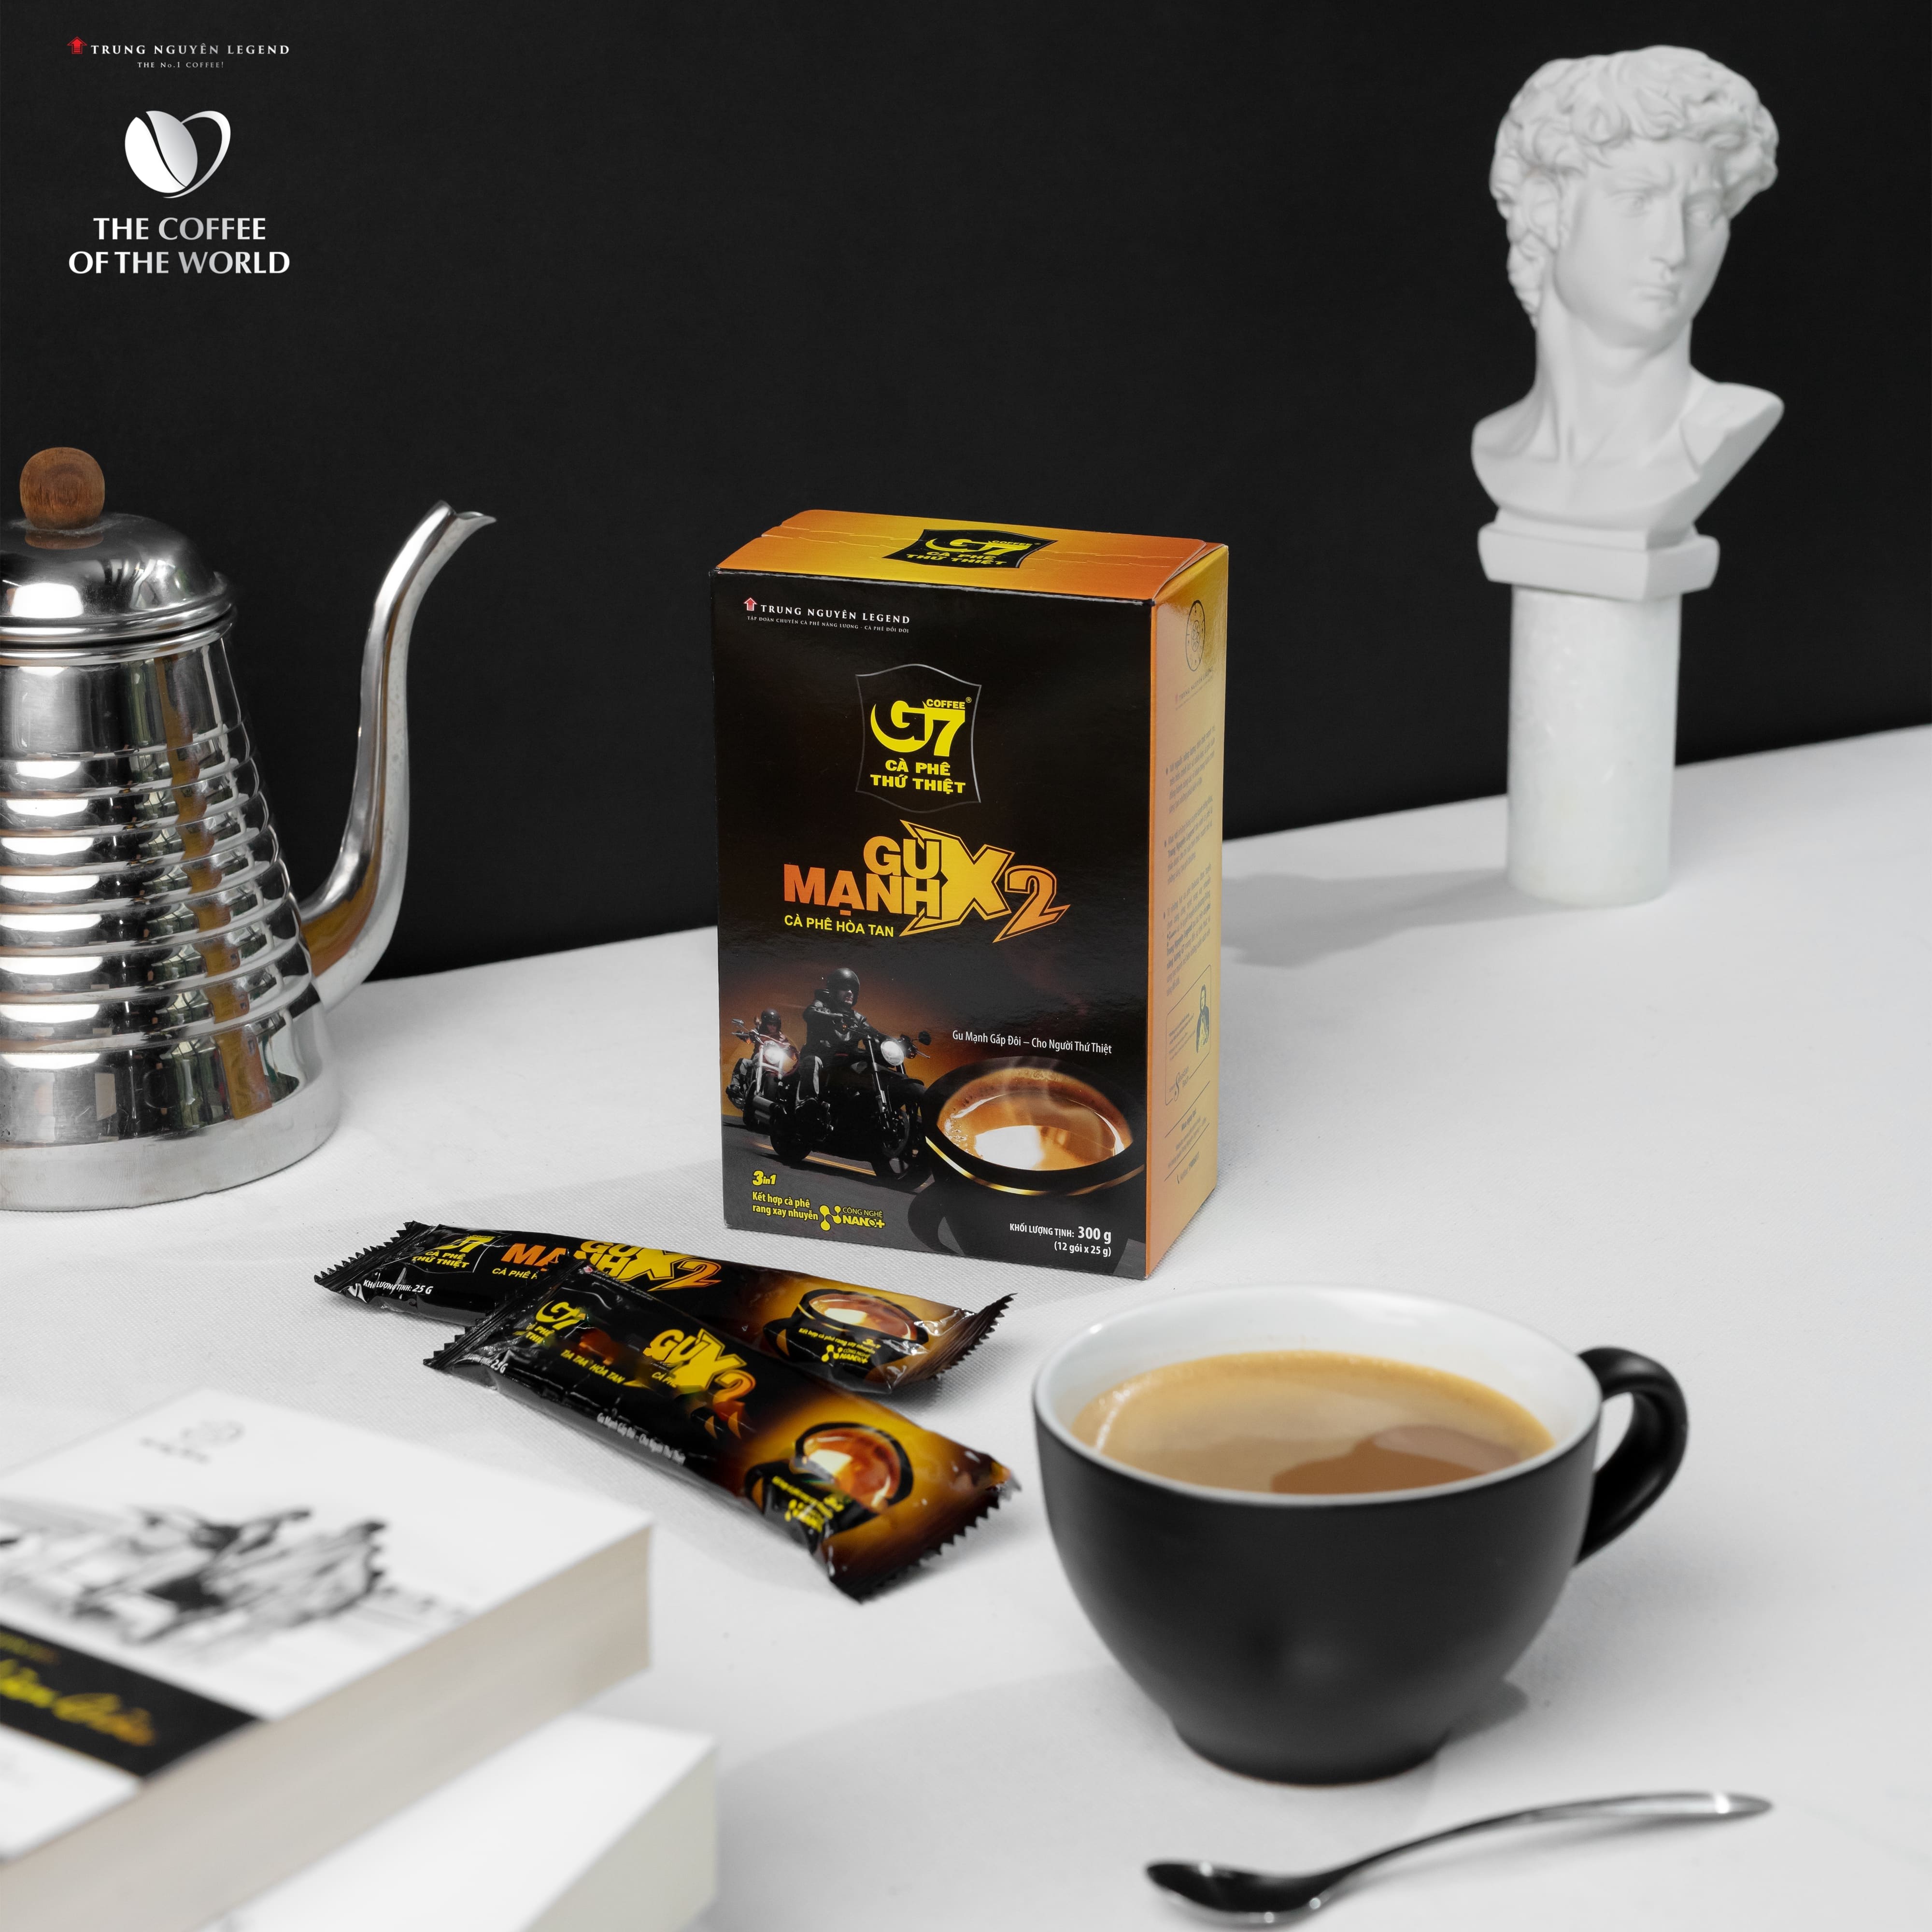 Hình ảnh Trung Nguyên Legend - Cà phê sữa hòa tan G7 3in1 gu mạnh - Hộp 12 gói x 25gr